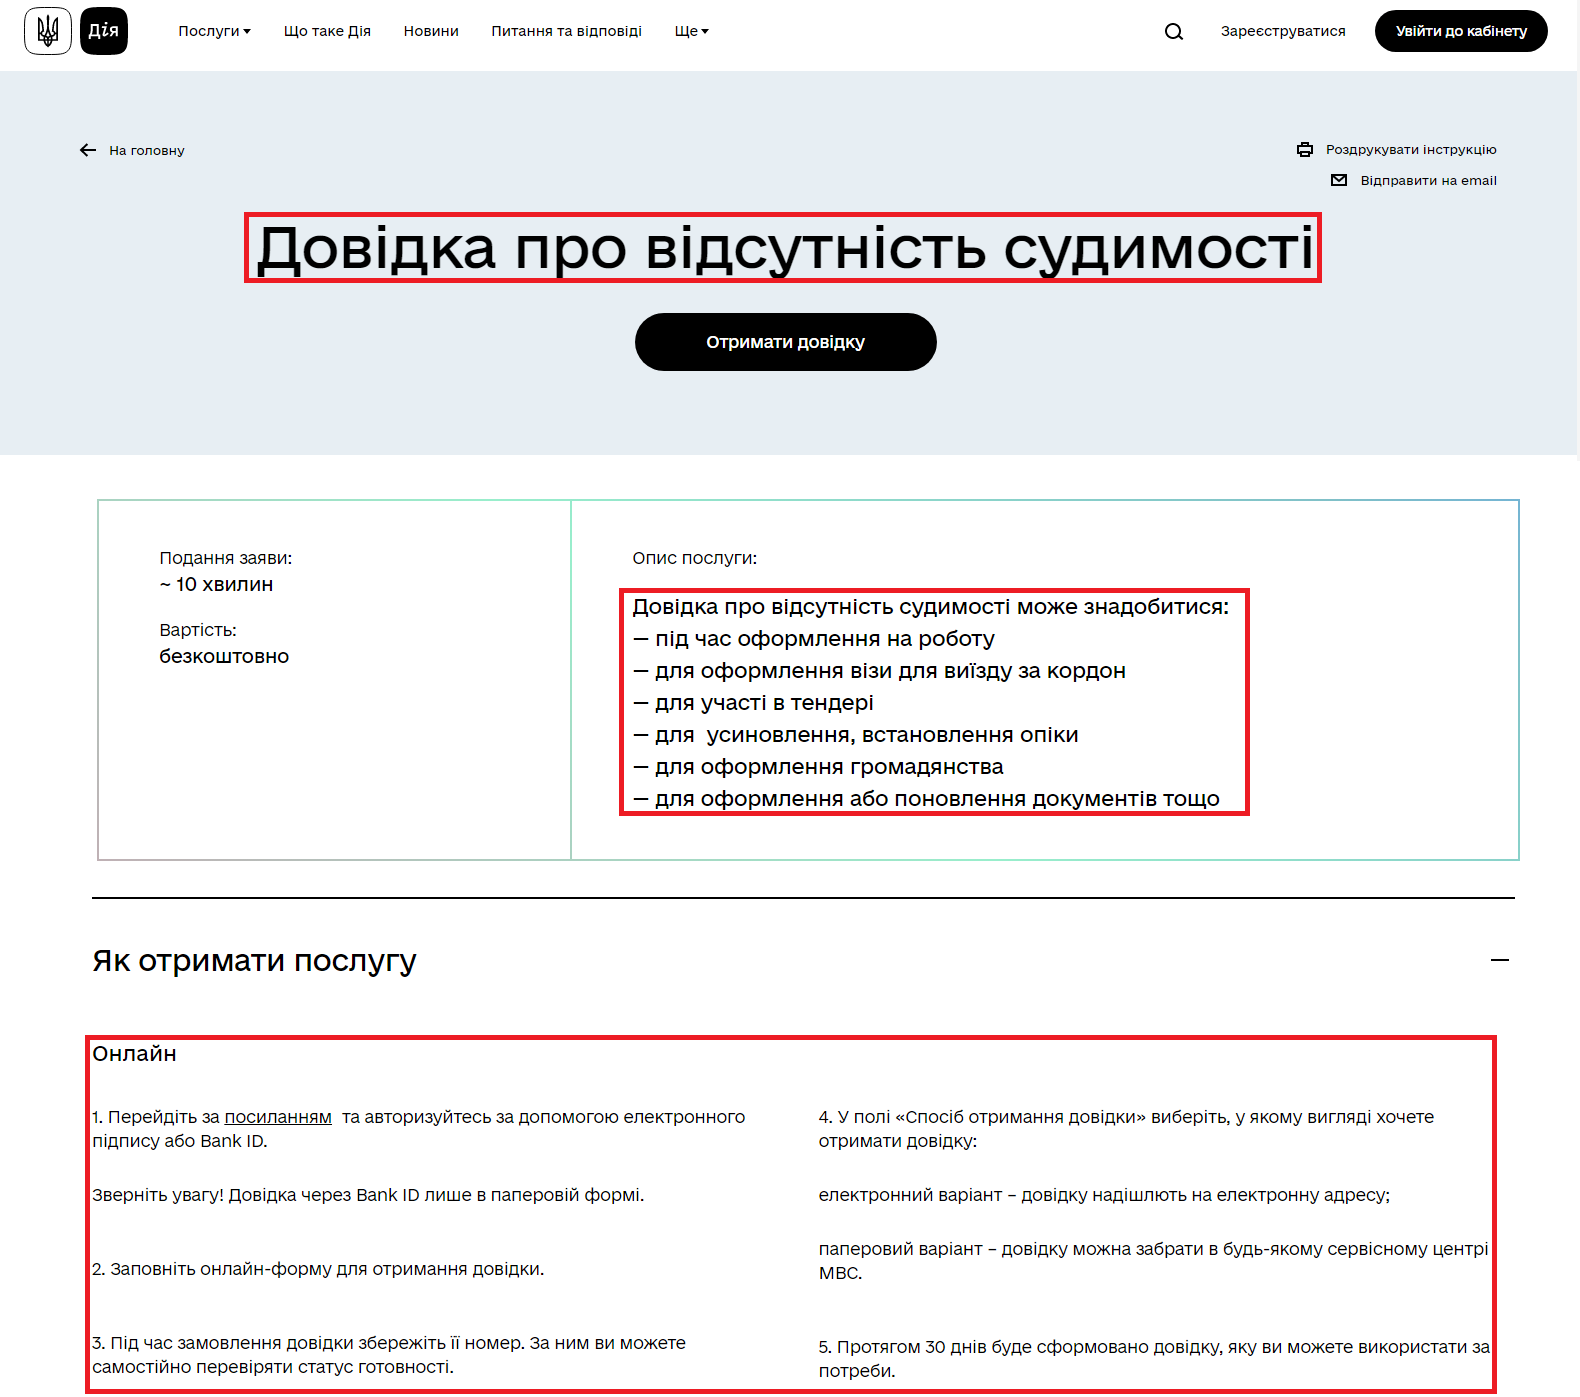 https://diia.gov.ua/services/dovidka-pro-vidsutnist-sudimosti